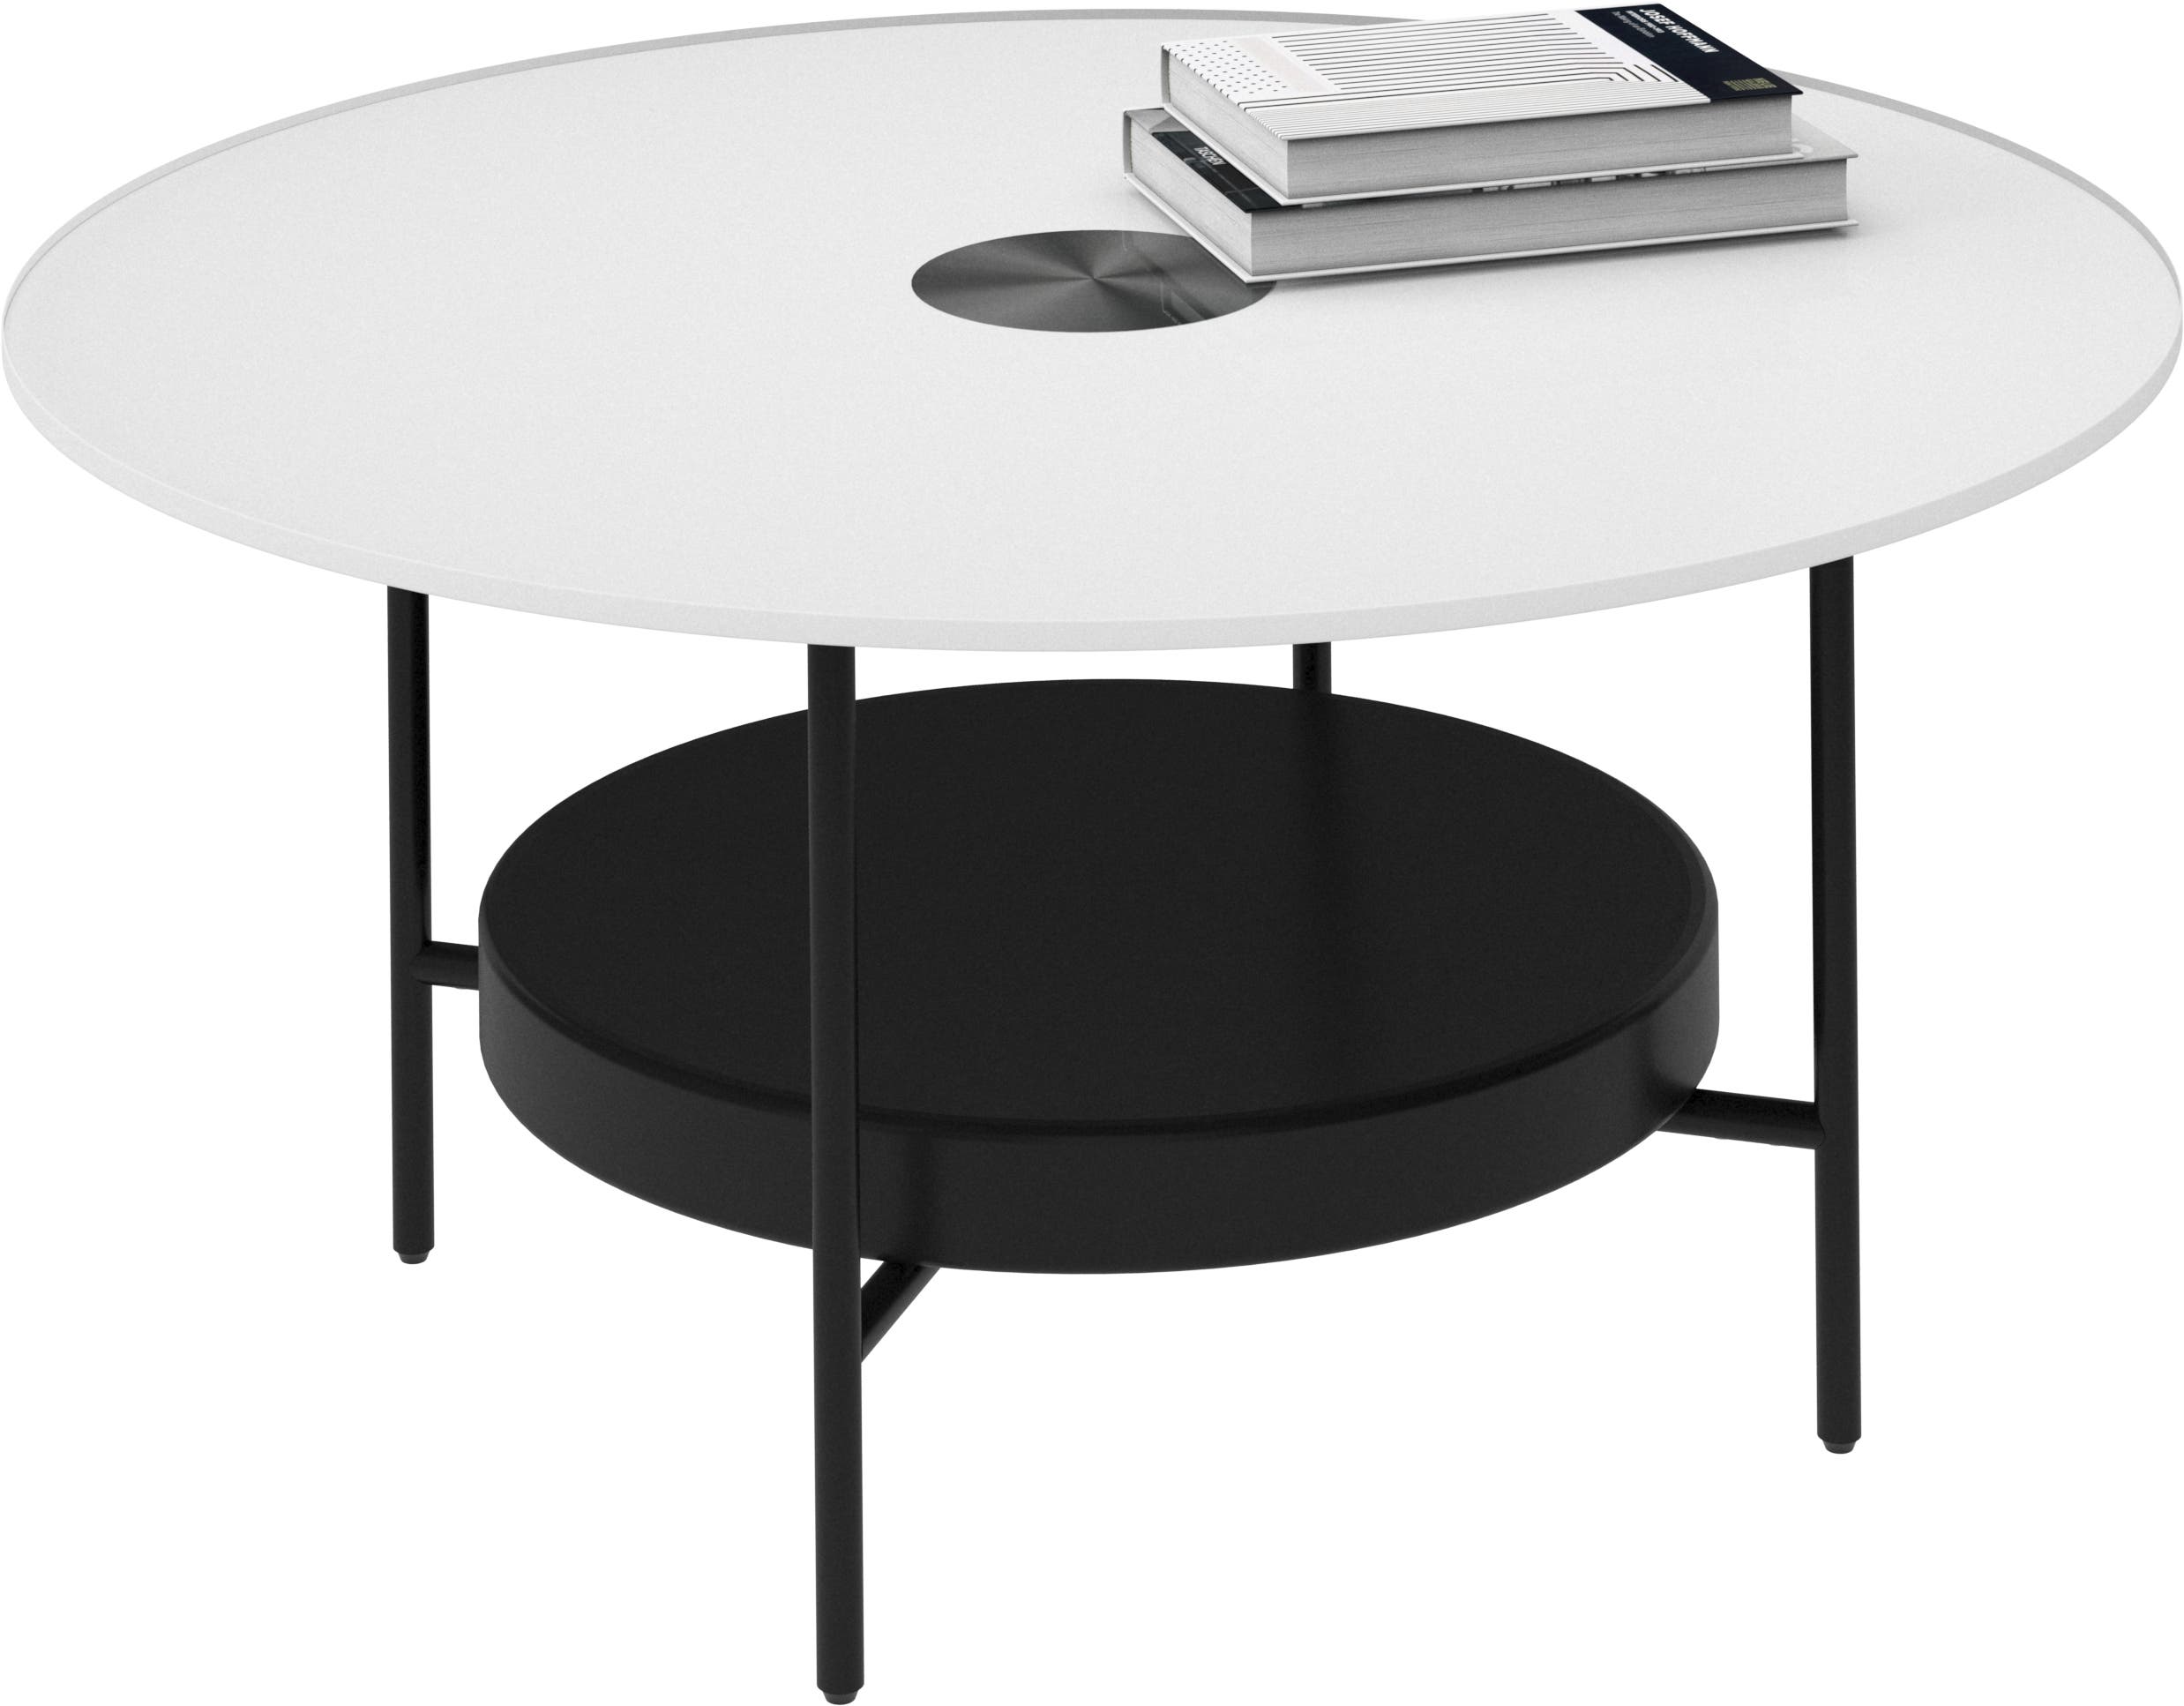 デザイナーコーヒーテーブル | すべてのデザインはこちら | ボーコンセプト